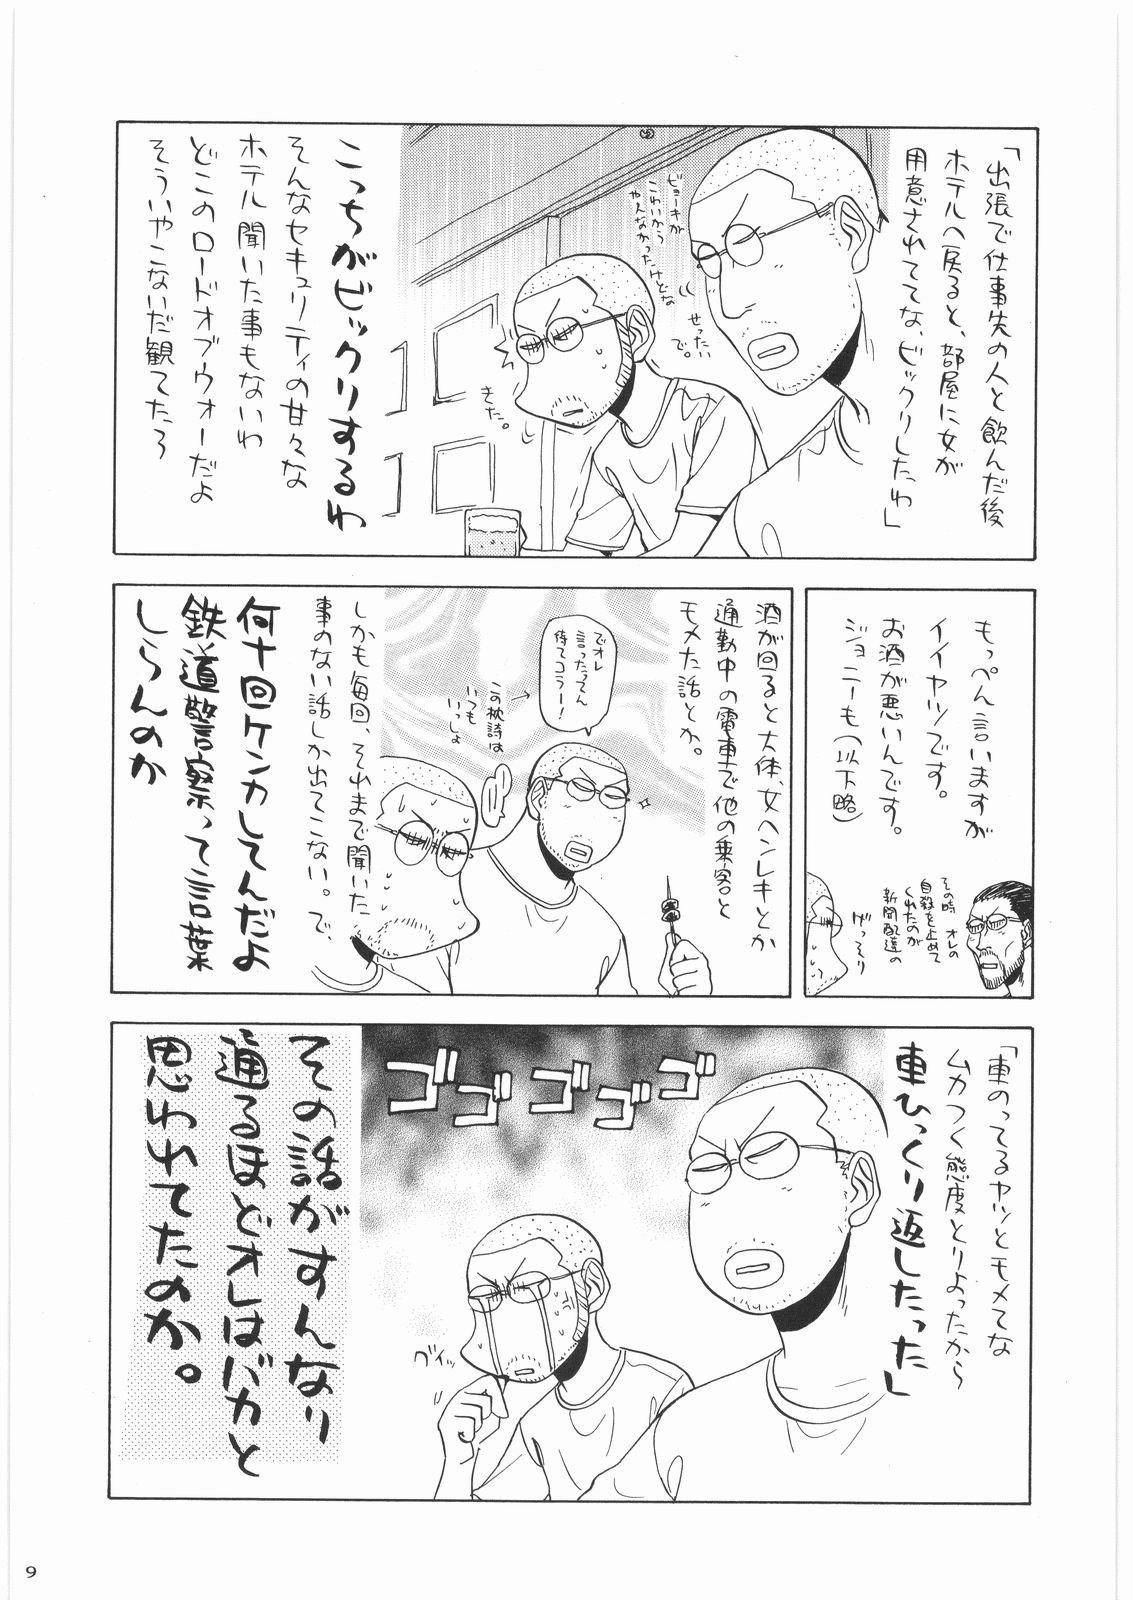 Masseuse Oneesama Koushien - K on Monster hunter Umineko no naku koro ni Putaria - Page 8